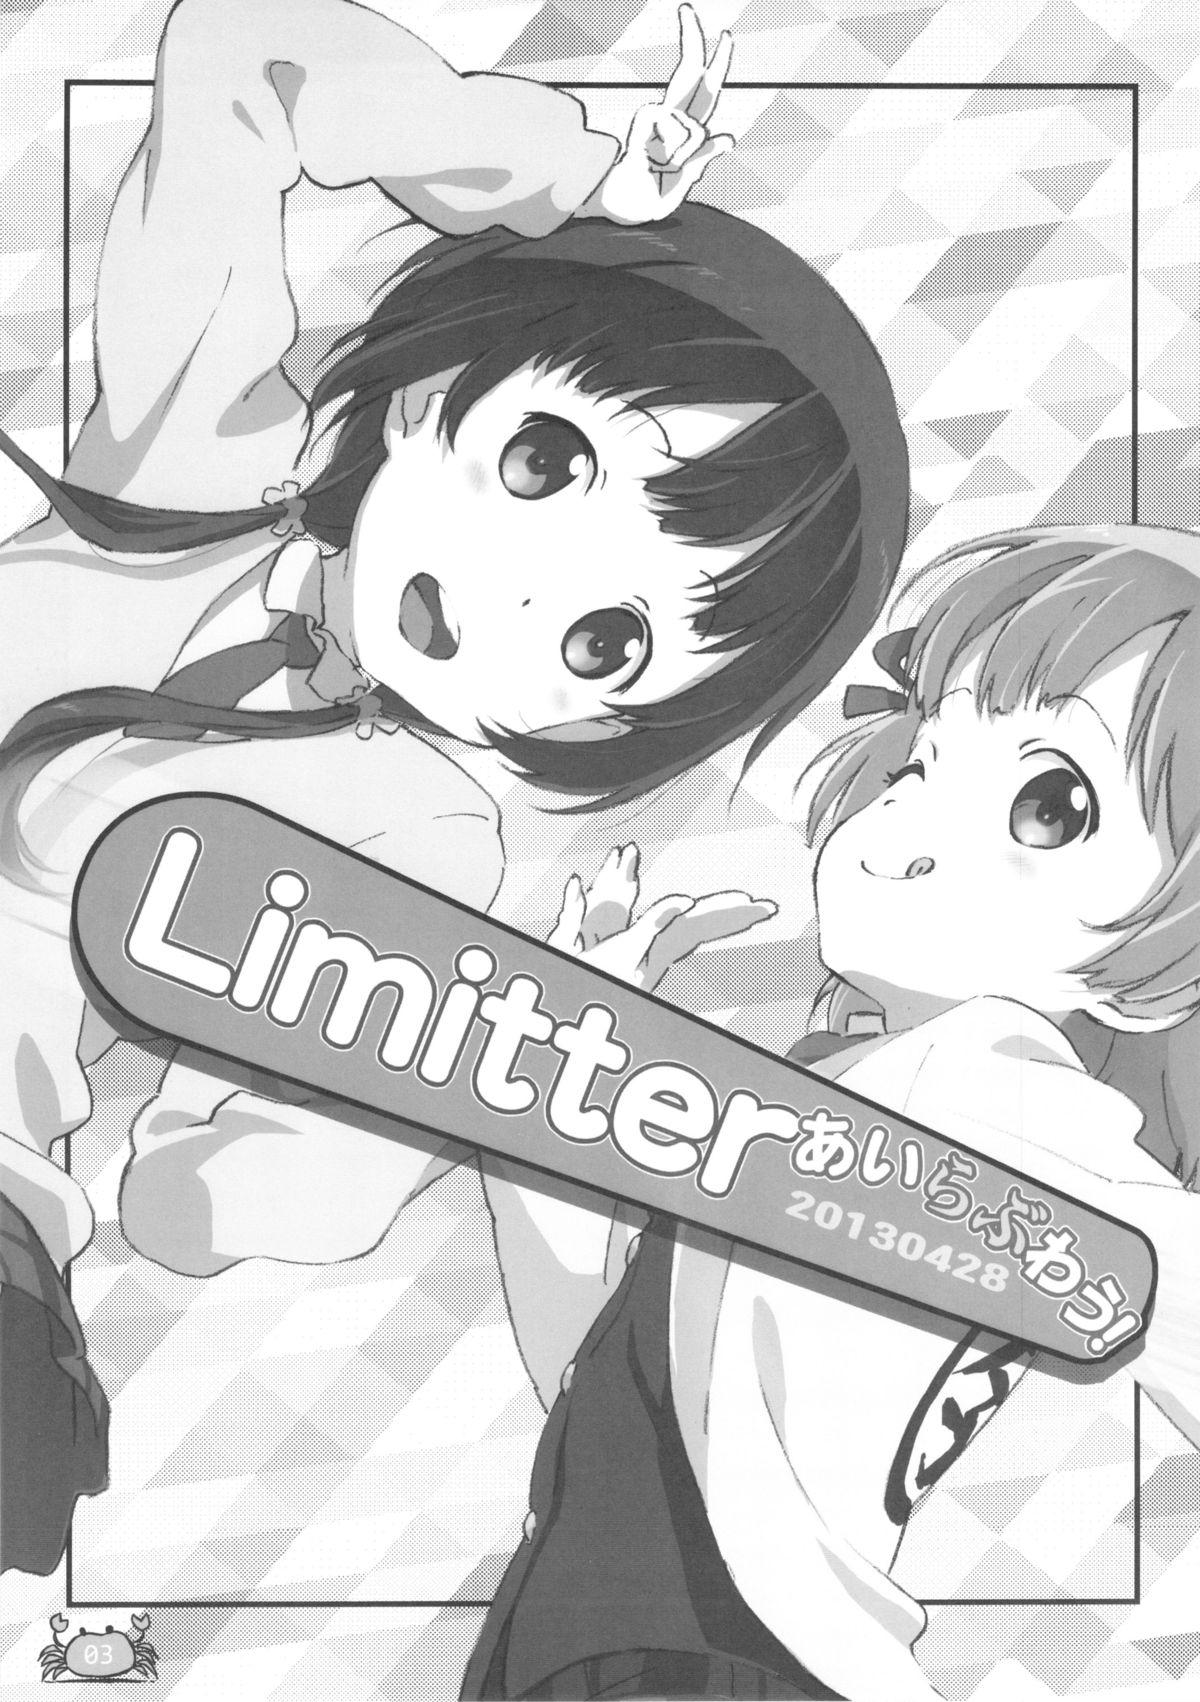 Deep Limitter I Love Wau! 20130428 - Aiura Amateurs - Page 3